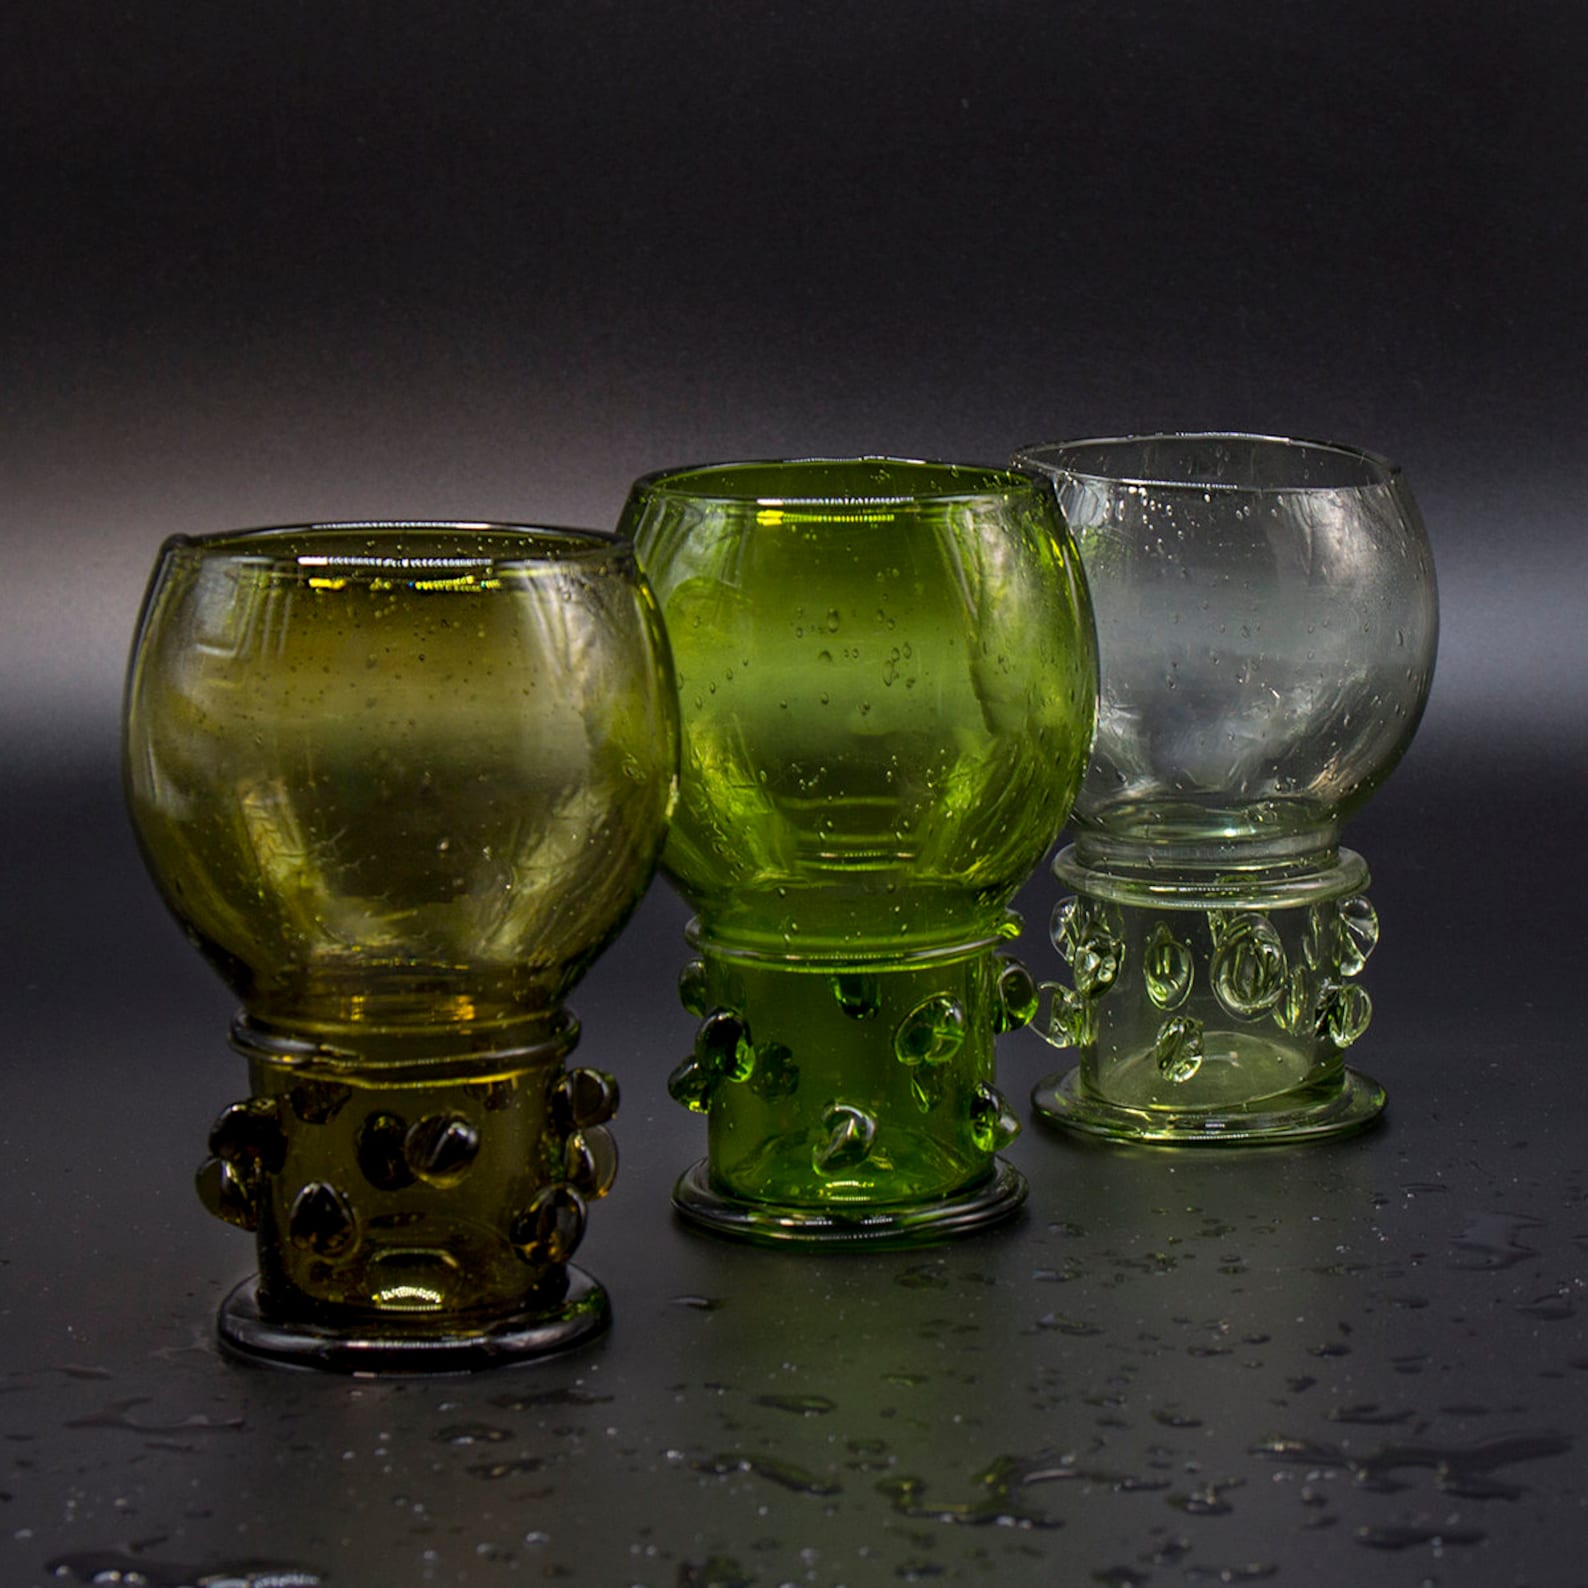 Römer, Medieval wine glass